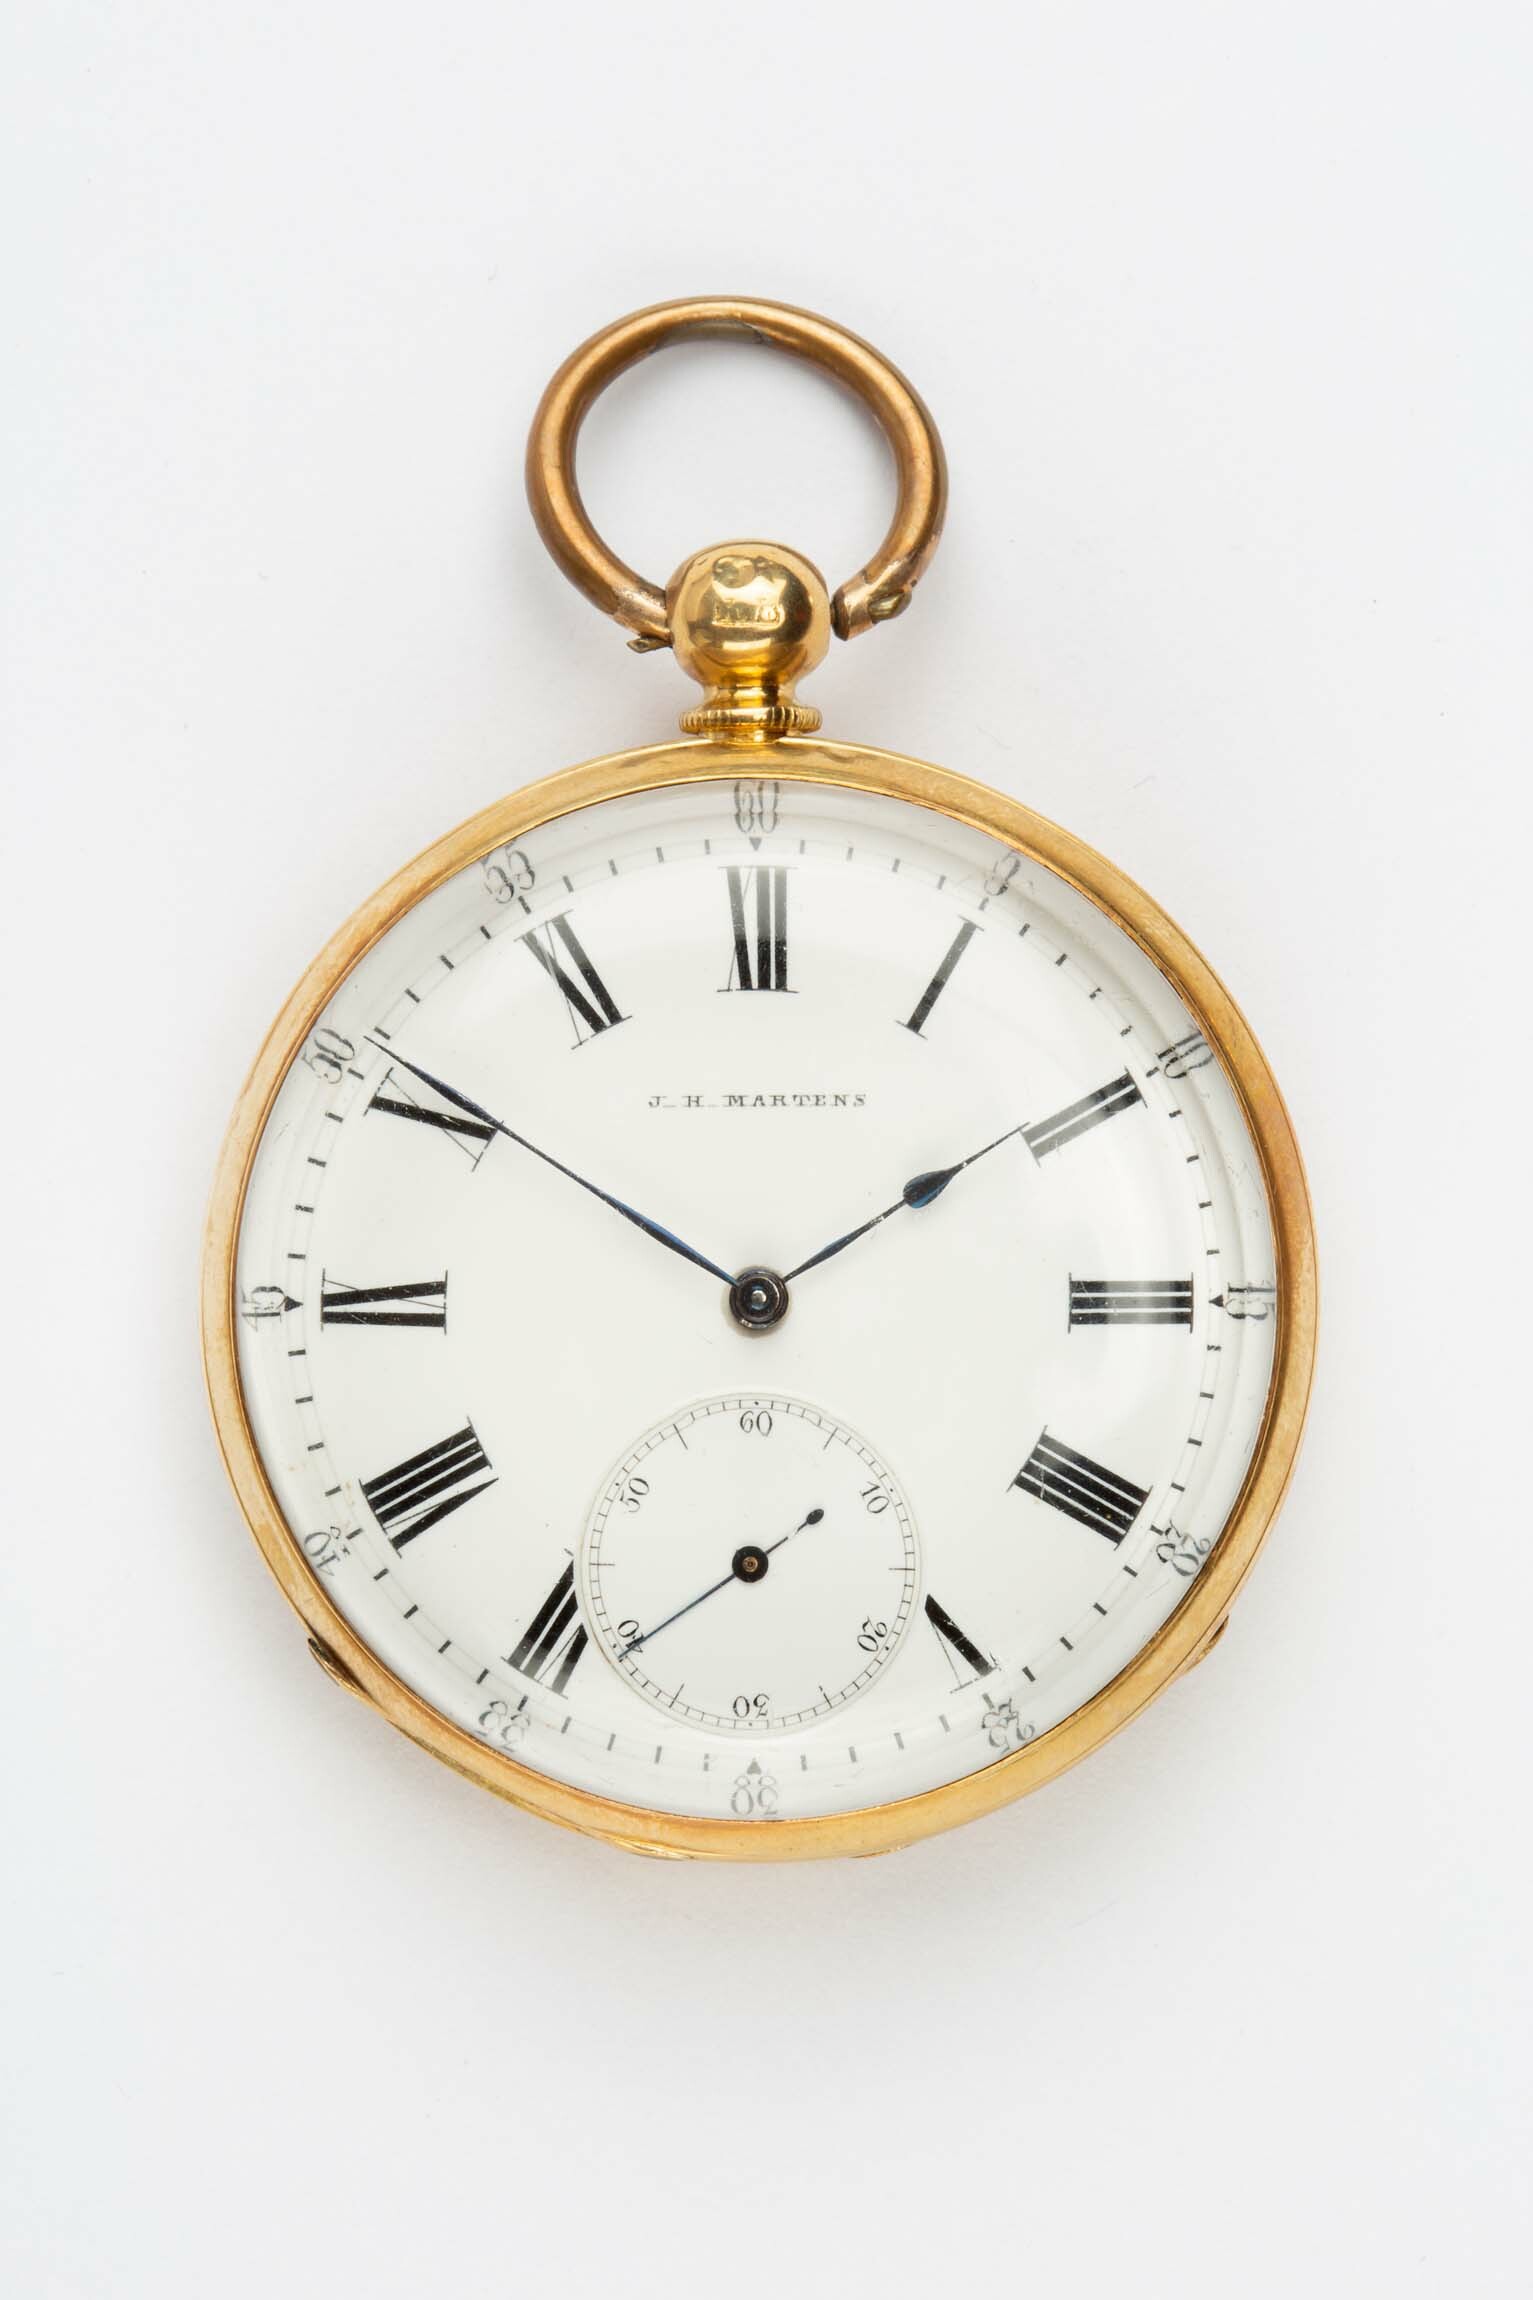 Taschenuhr, Jess-Hans Martens, Freiburg, 1867-1883 (Deutsches Uhrenmuseum CC BY-SA)